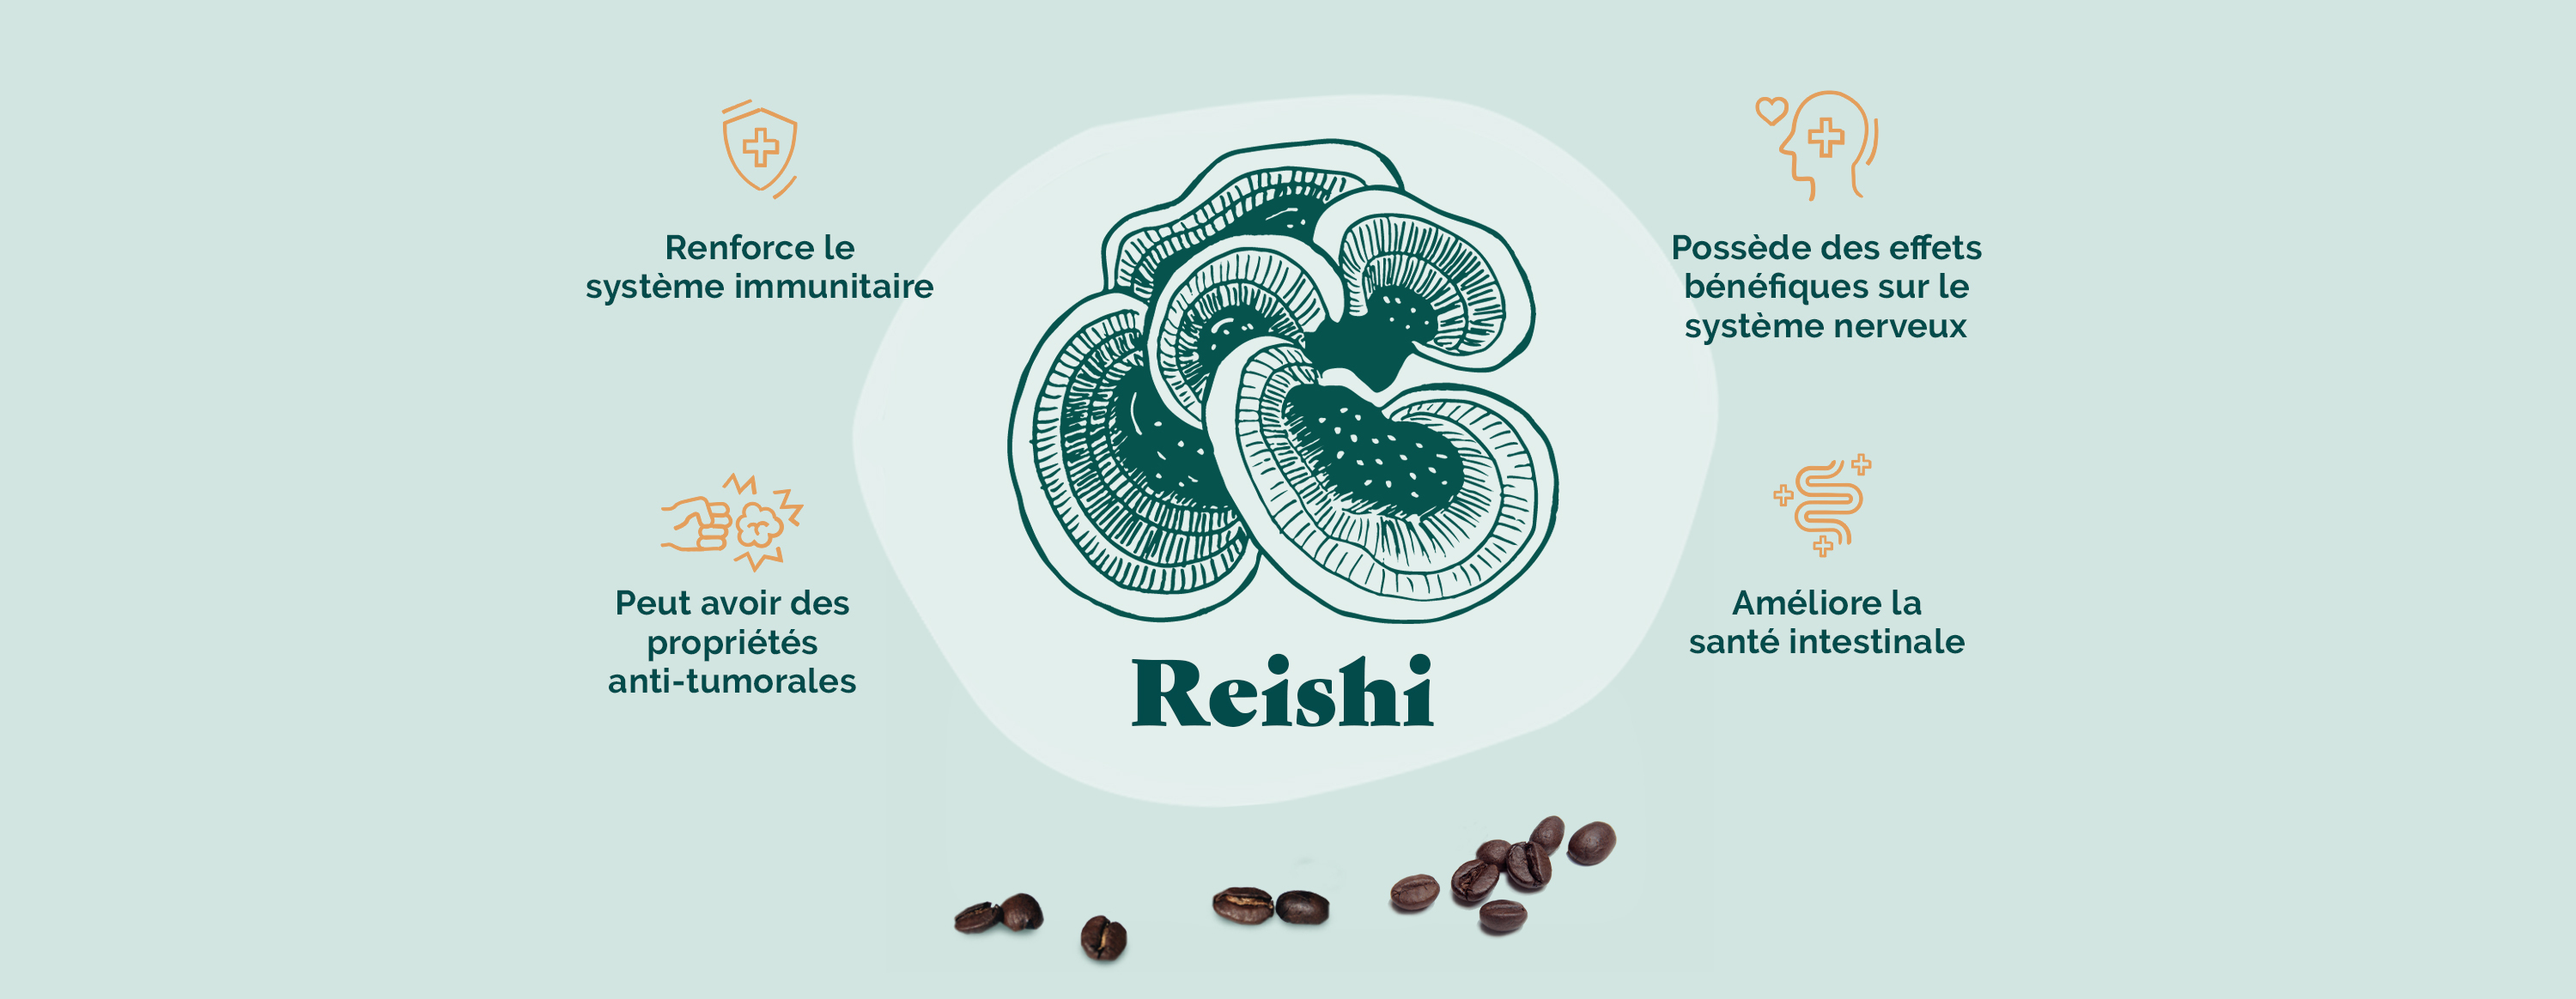 Qu’est-ce que le Reishi ?